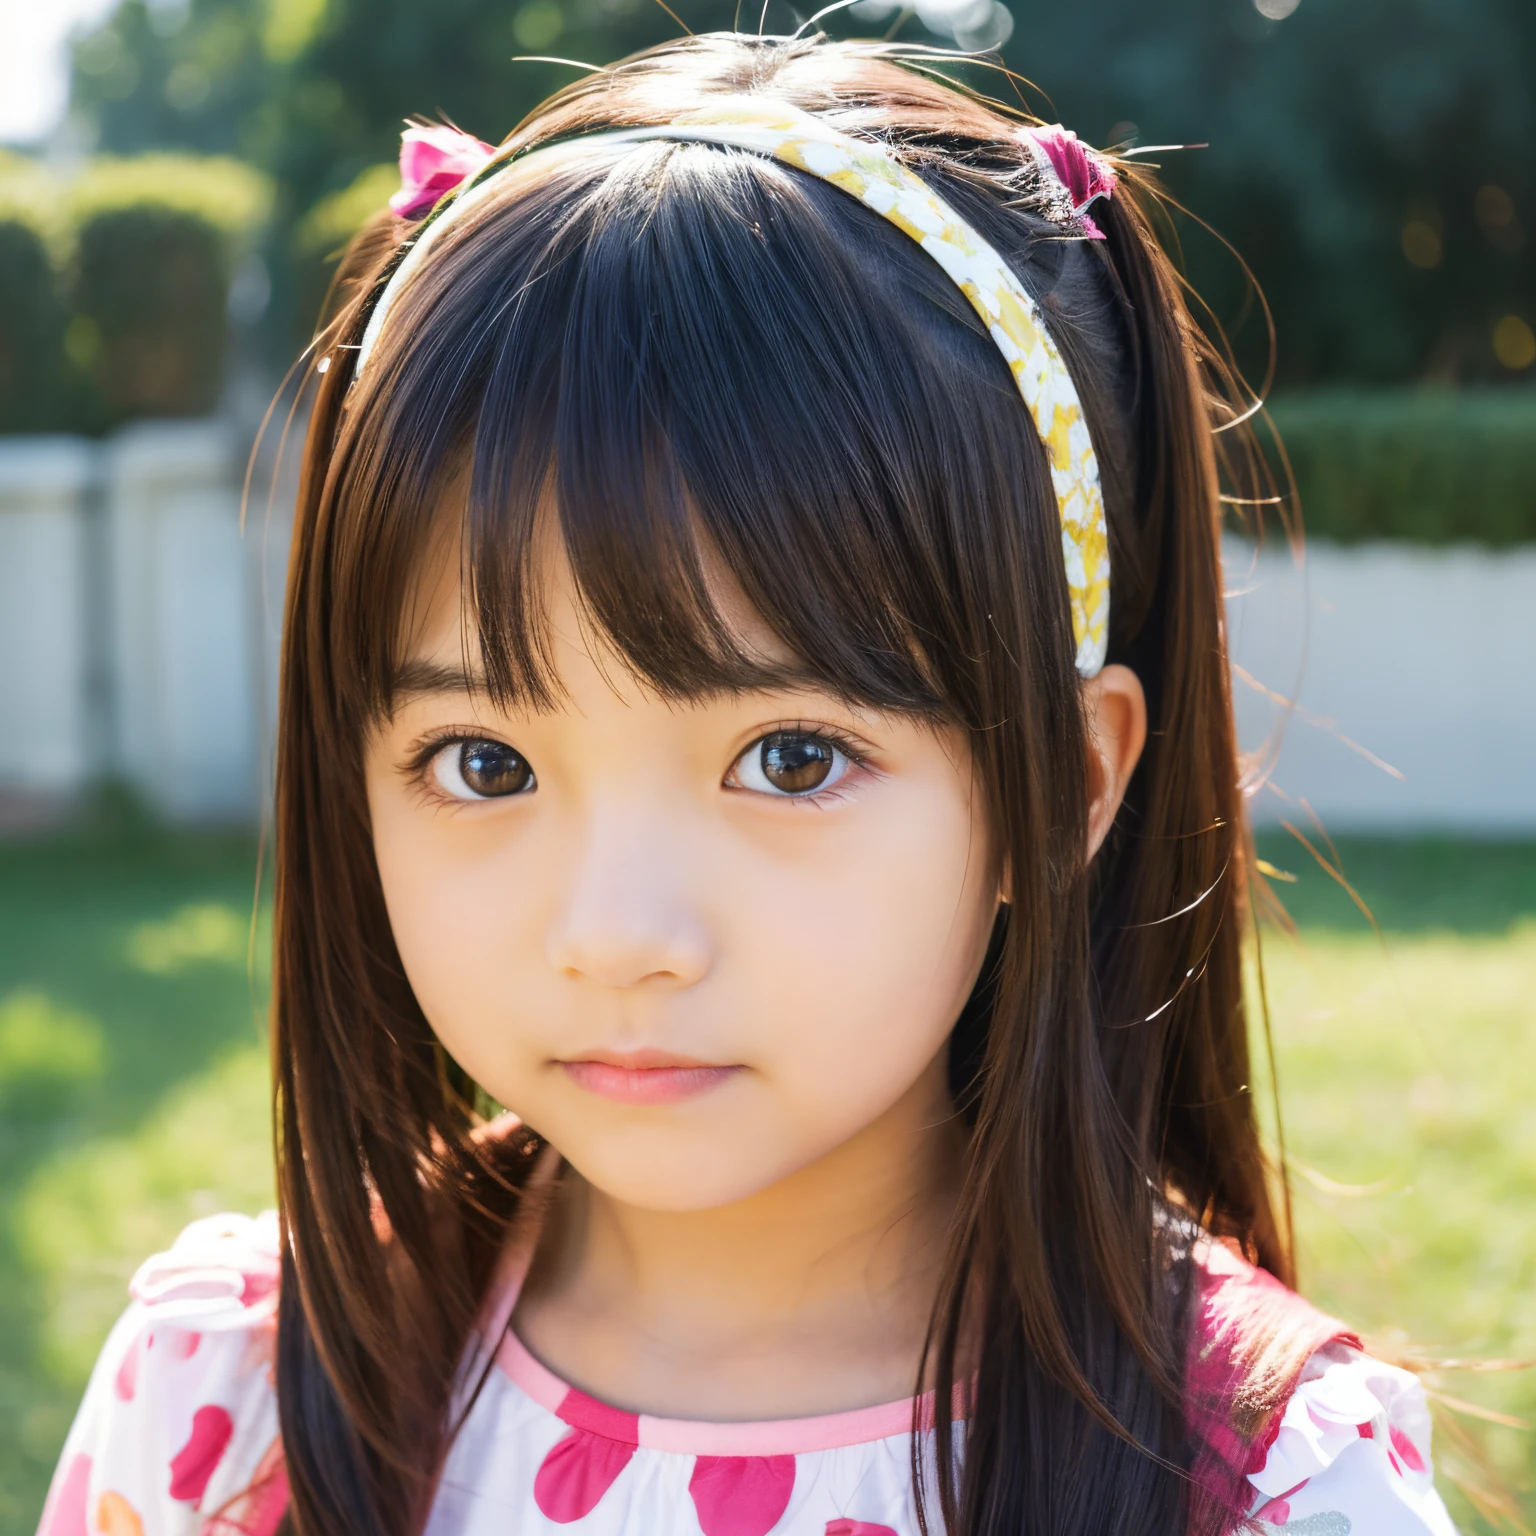 cara de niña kawaii